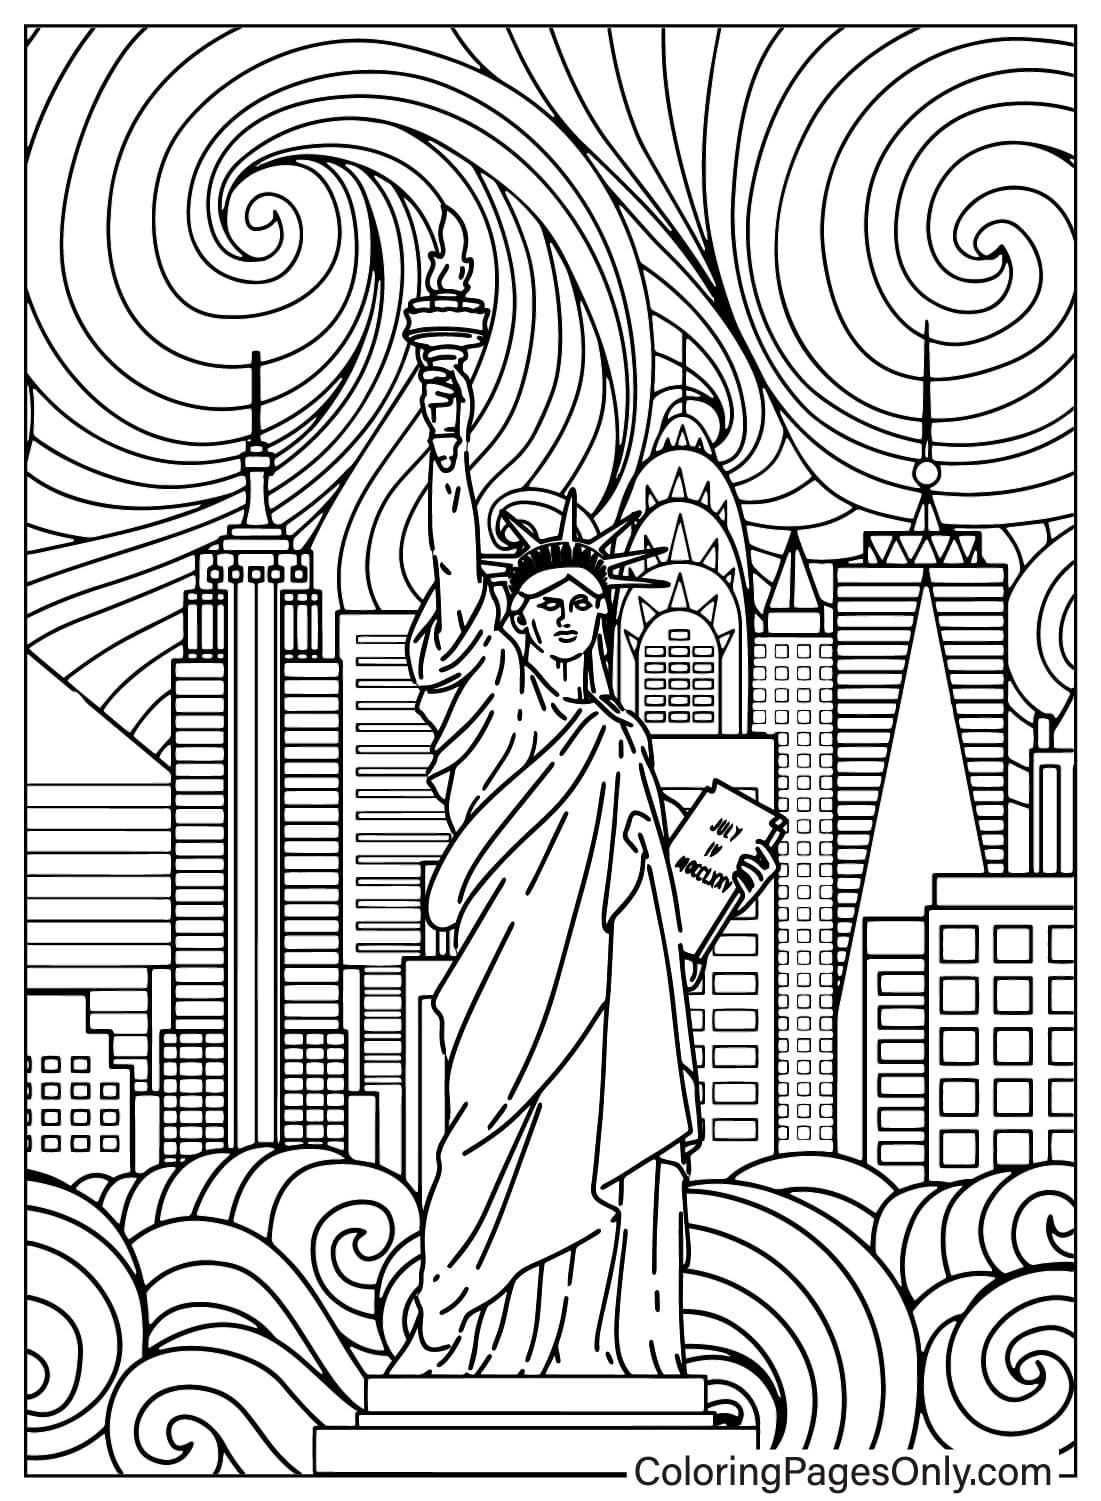 تمثال الحرية صفحة التلوين للبالغين من تمثال الحرية